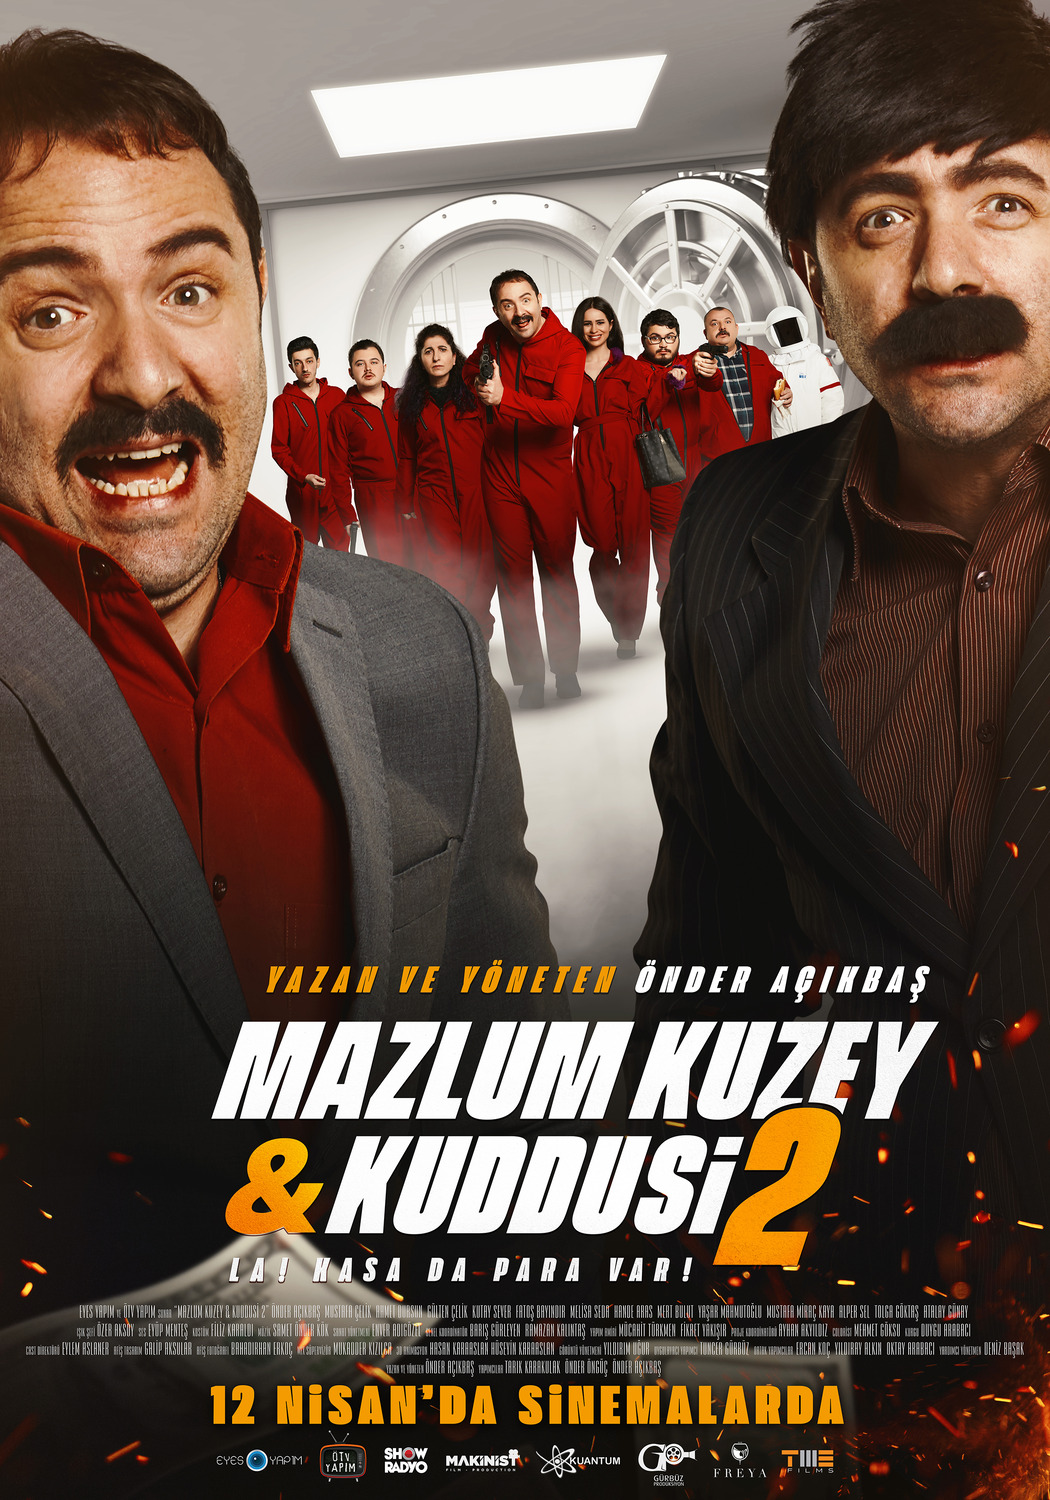 Extra Large Movie Poster Image for Mazlum Kuzey & Kuddusi 2 La! Kasada Para Var! (#2 of 3)